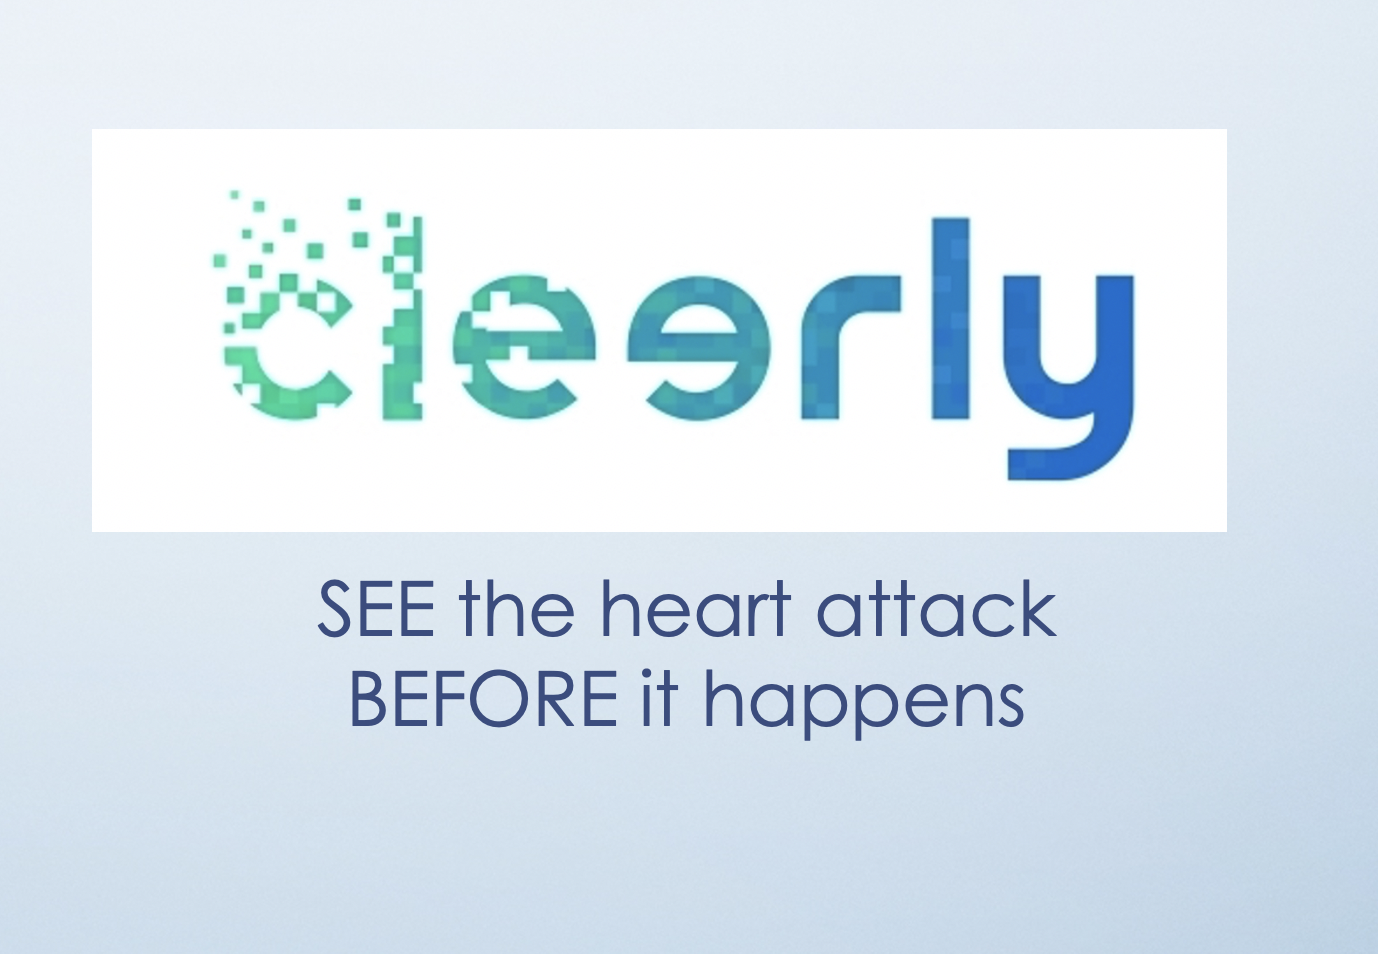 "Cleerly" seeing Heart Disease